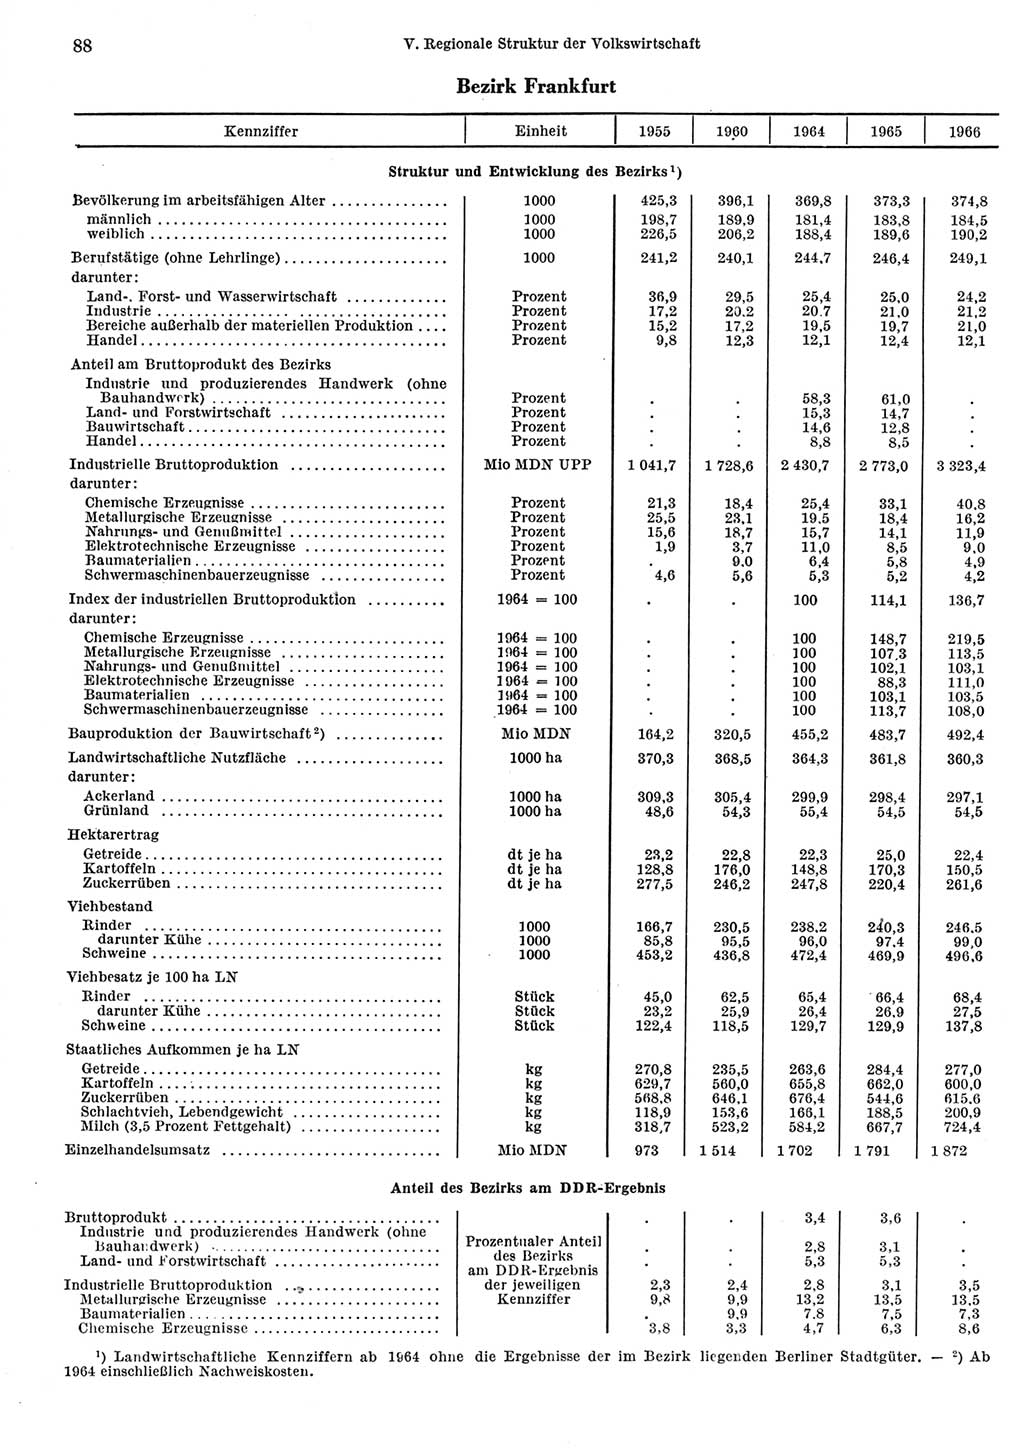 Statistisches Jahrbuch der Deutschen Demokratischen Republik (DDR) 1967, Seite 88 (Stat. Jb. DDR 1967, S. 88)